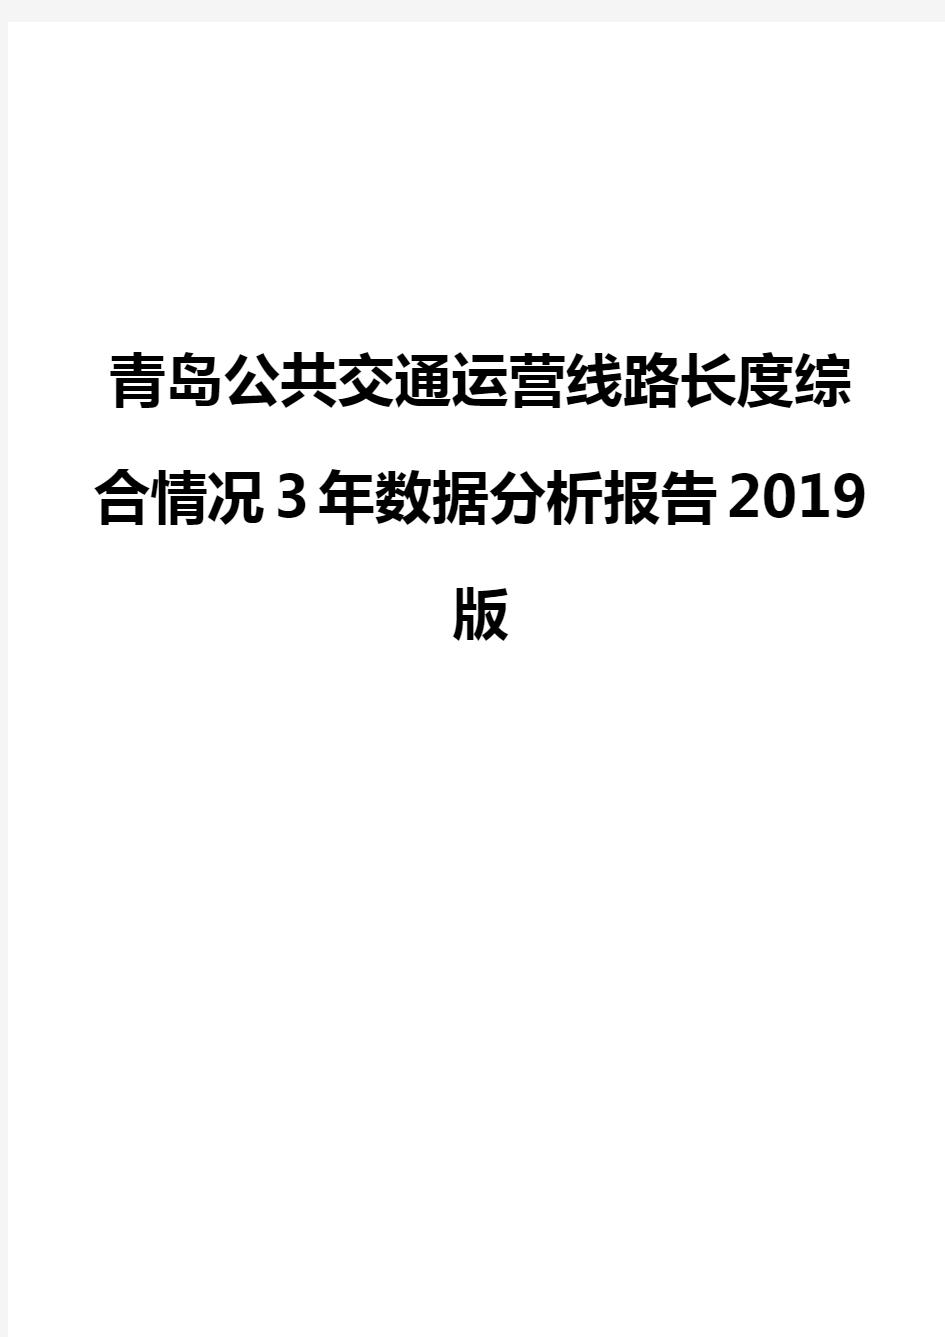 青岛公共交通运营线路长度综合情况3年数据分析报告2019版